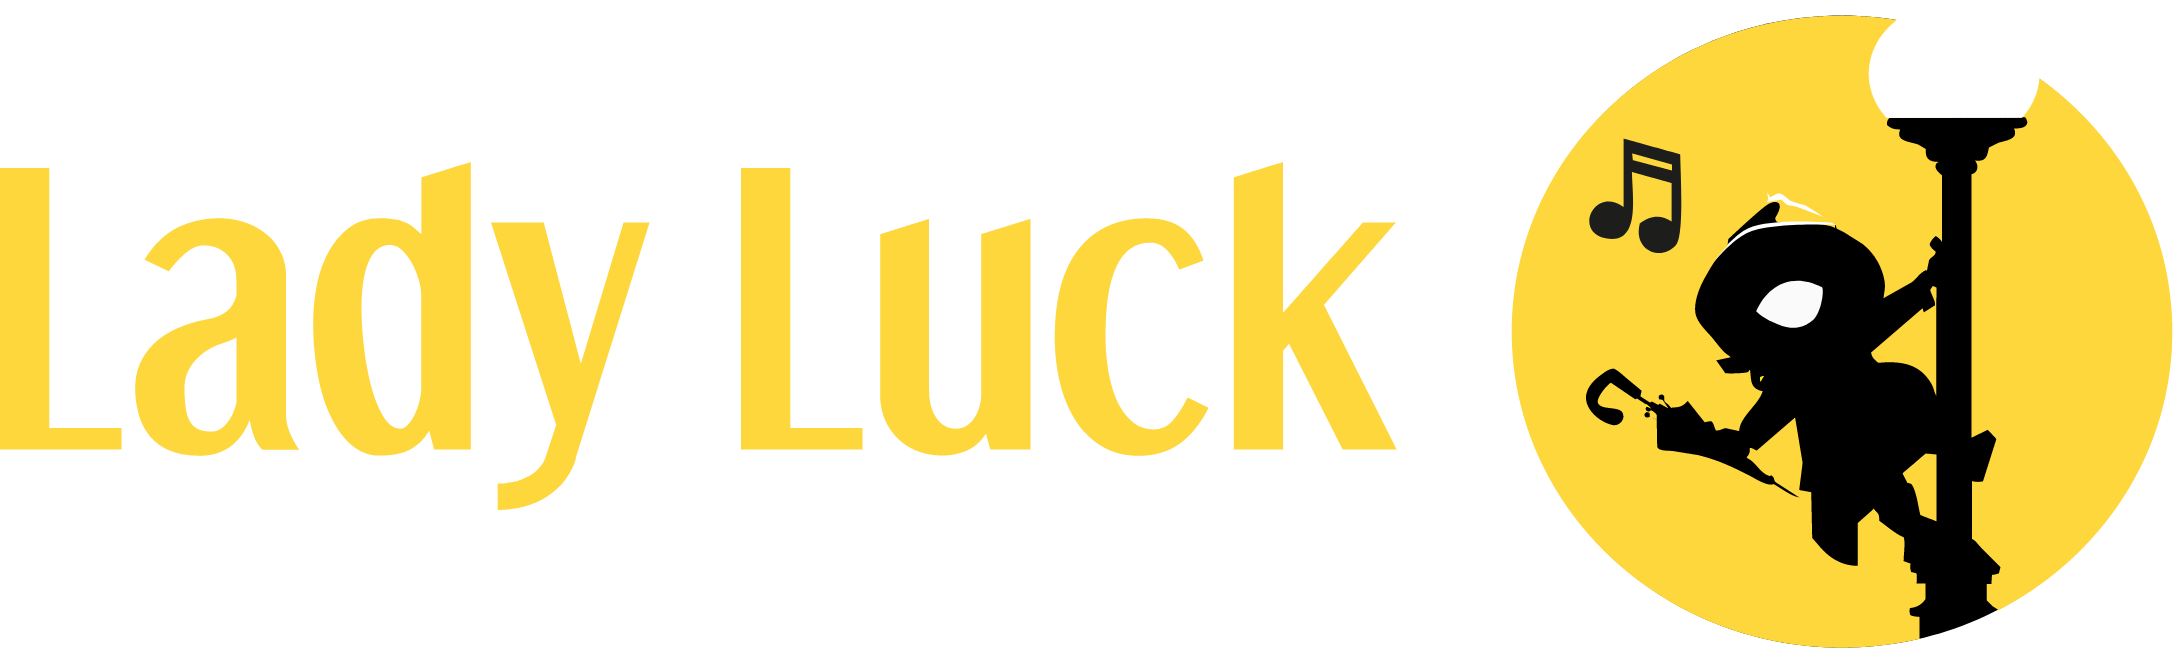 LL Lucky Games Logo groß für dunkle Hintergründe (transparentes PNG)